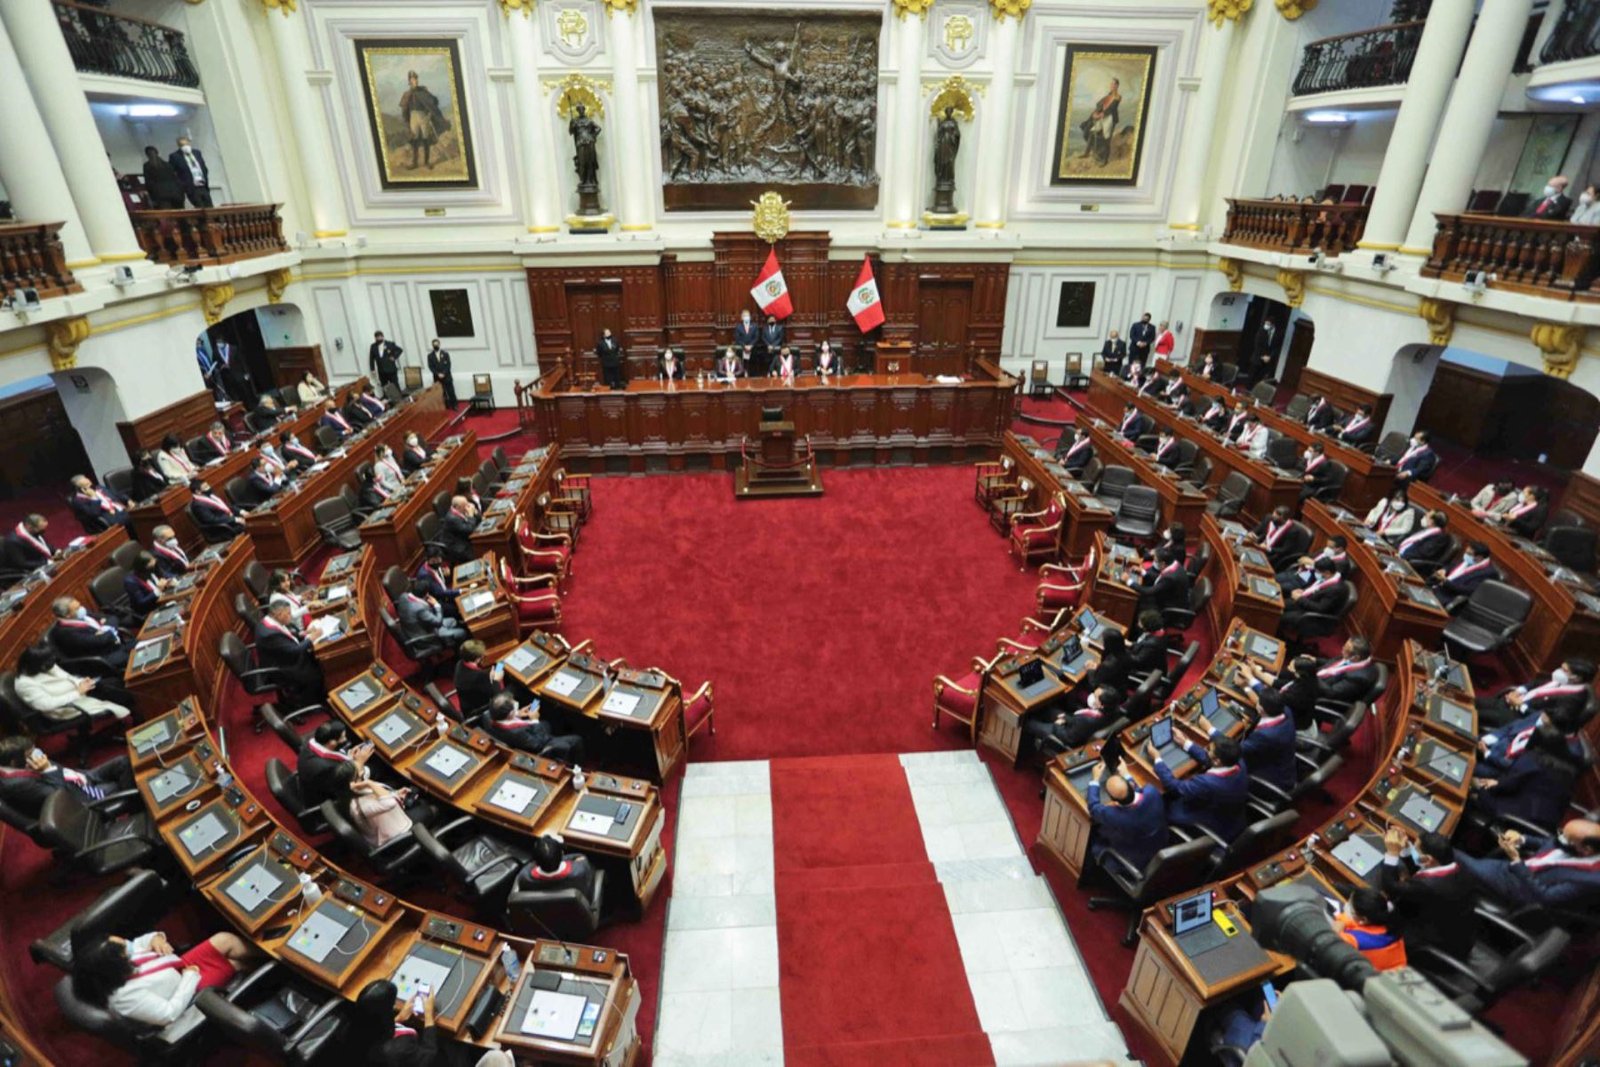 Representantes políticos se pronuncian en favor de la gobernabilidad y defensa de la democracia